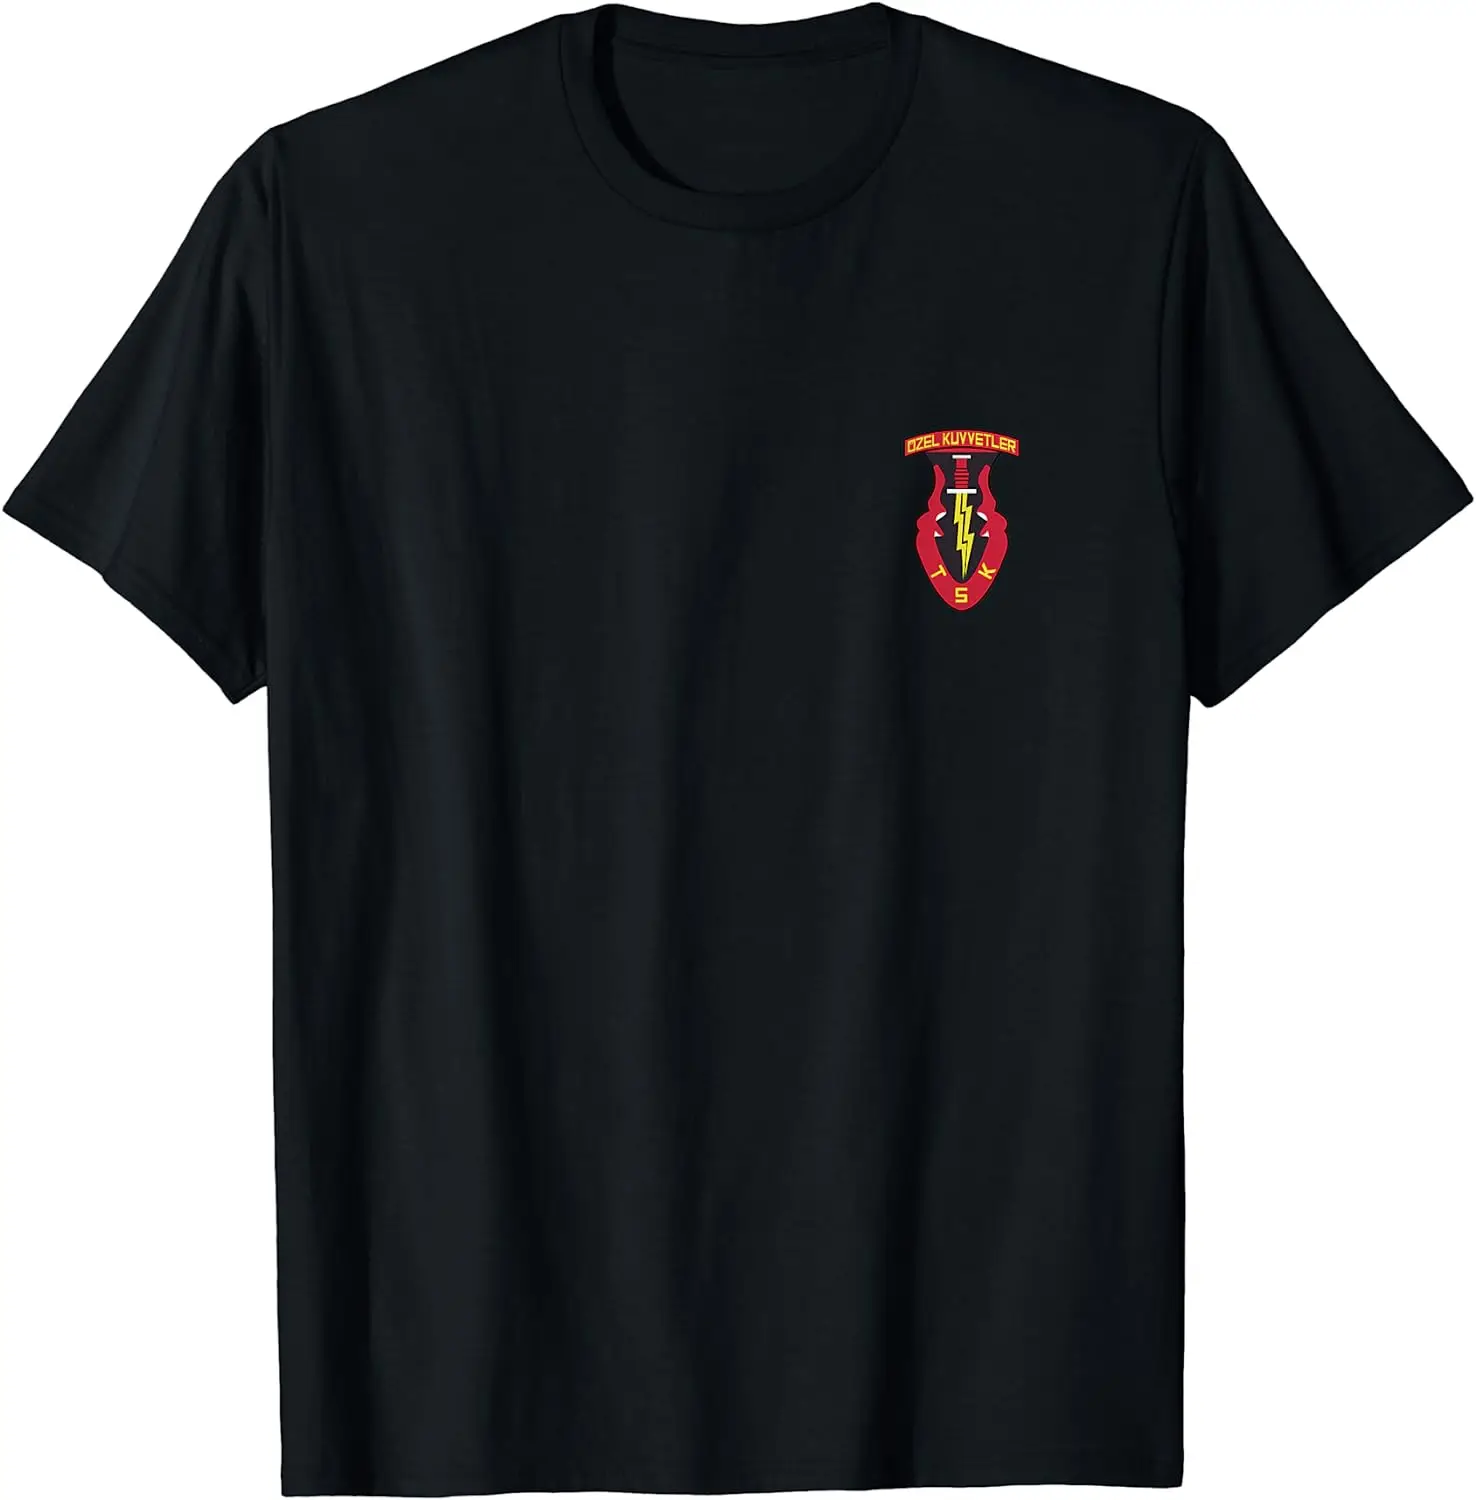 

Borde Bereliler Türkiye Special Forces Veteran Özel Kuvvetler T-shirt Short Sleeve Casual Cotton O-Neck Summer Men TShirt